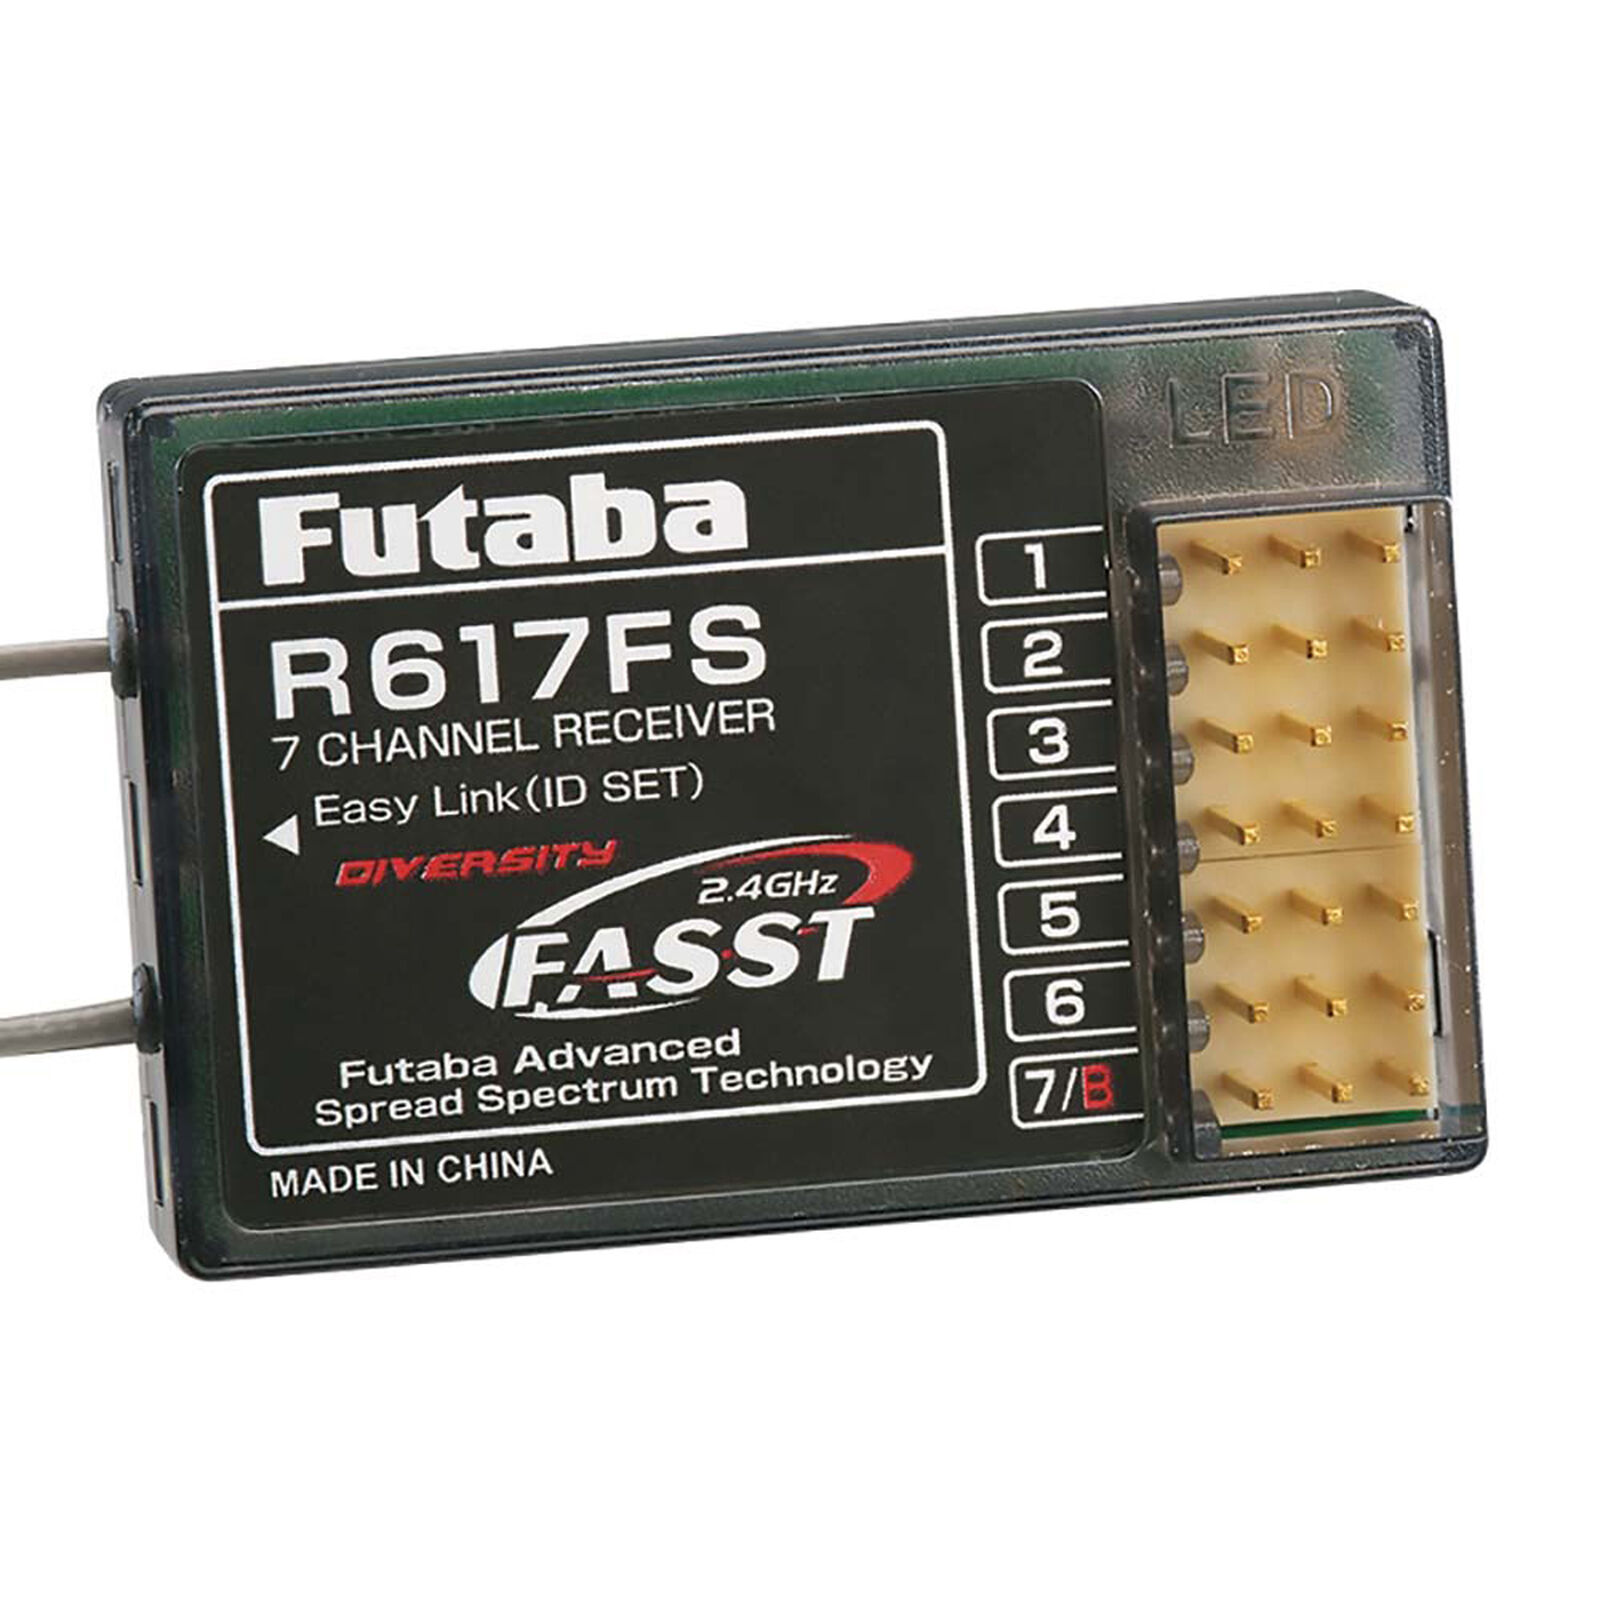 R617FS 7-Channel FASST Receiver